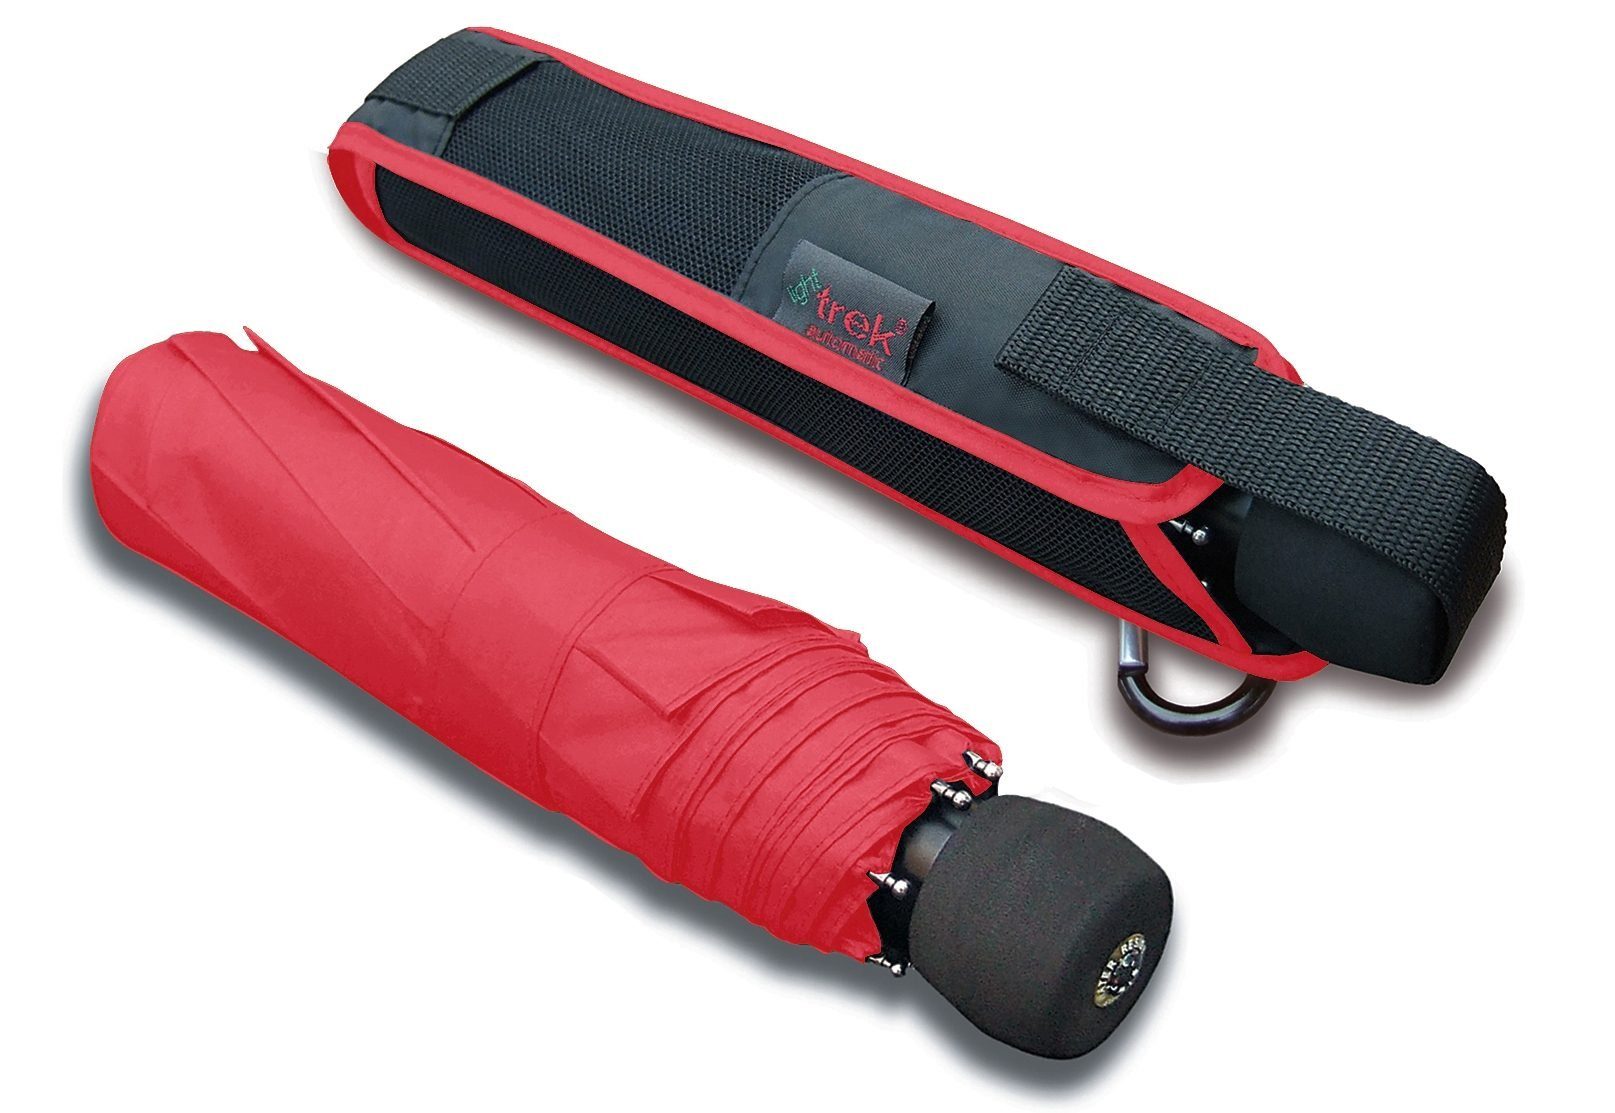 light Taschenregenschirm Automatik, integriertem Kompass rot trek, EuroSCHIRM® mit